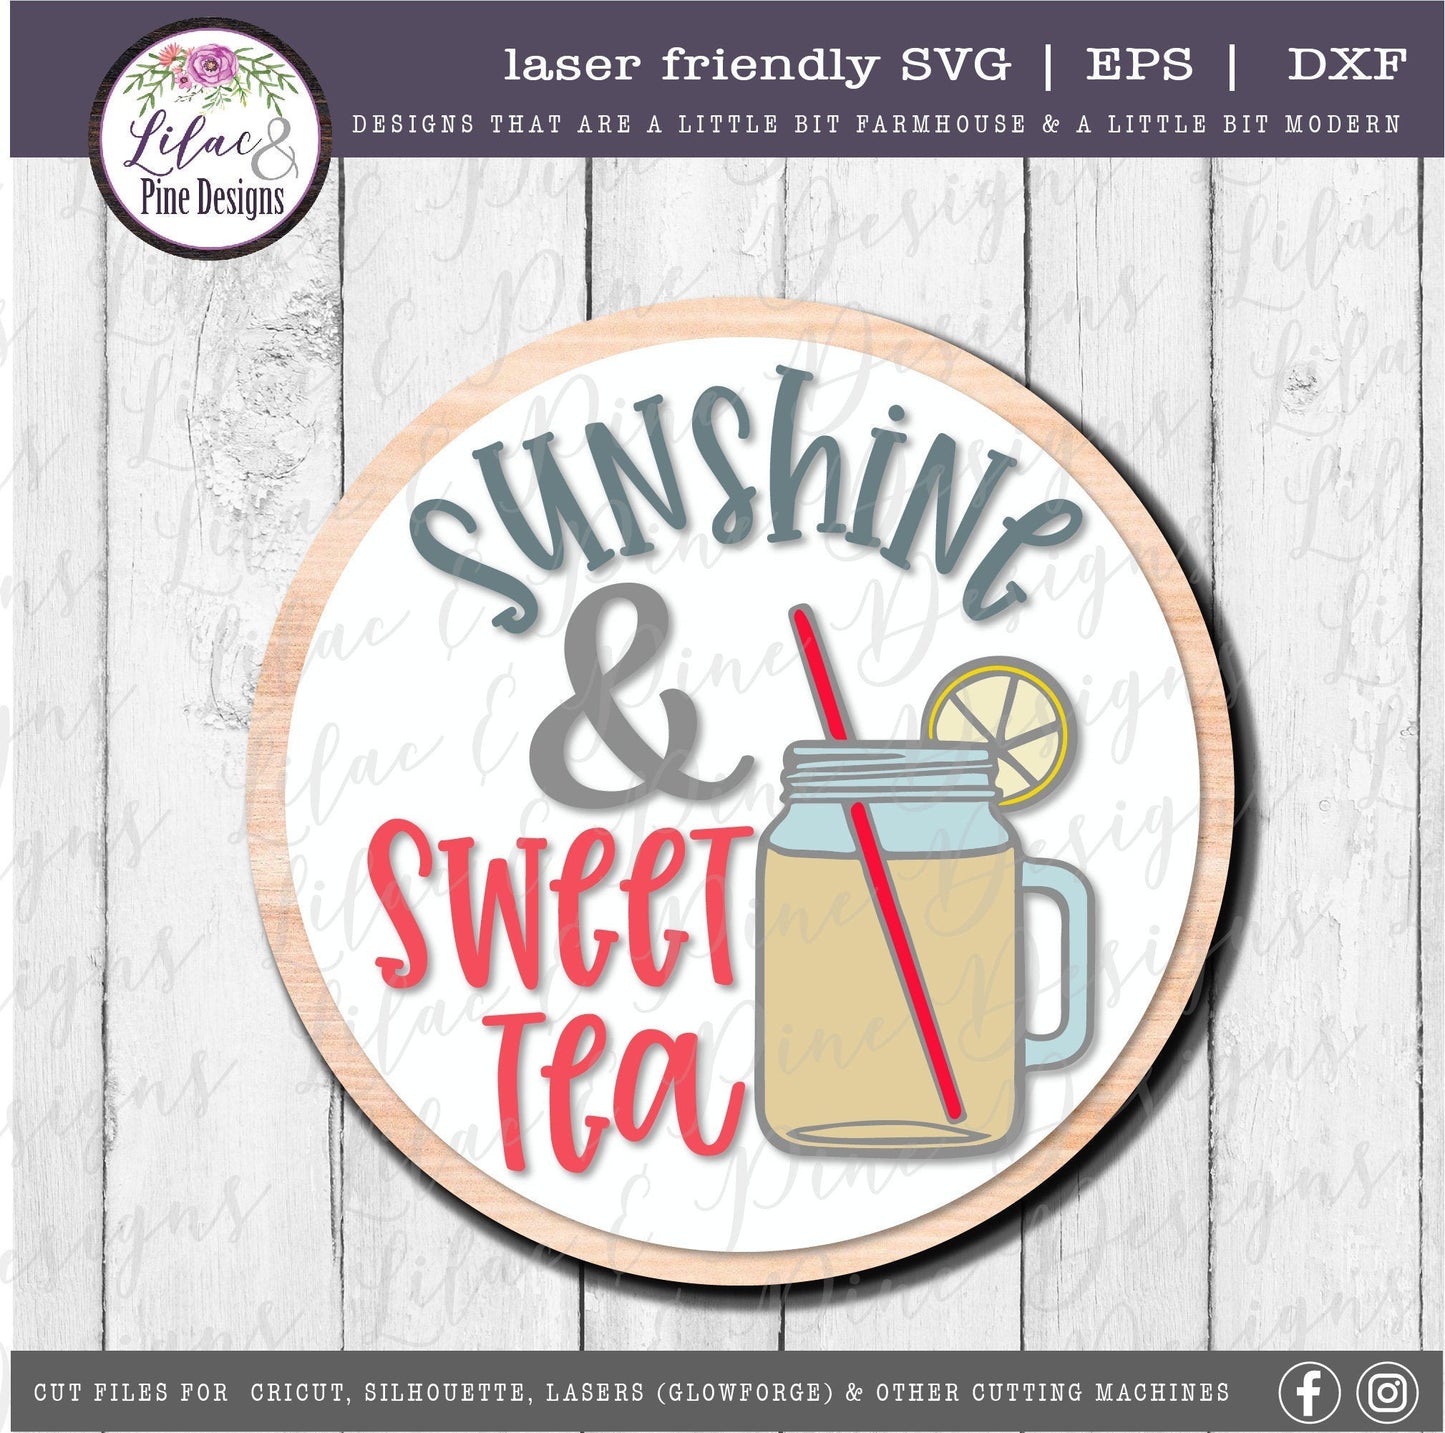 Sunshine and Sweet Tea SVG, Mason Jar SVG,  Modern Farmhouse sign SVG,  Kitchen decor Svg,  Cricut Cut file, Glowforge laser file